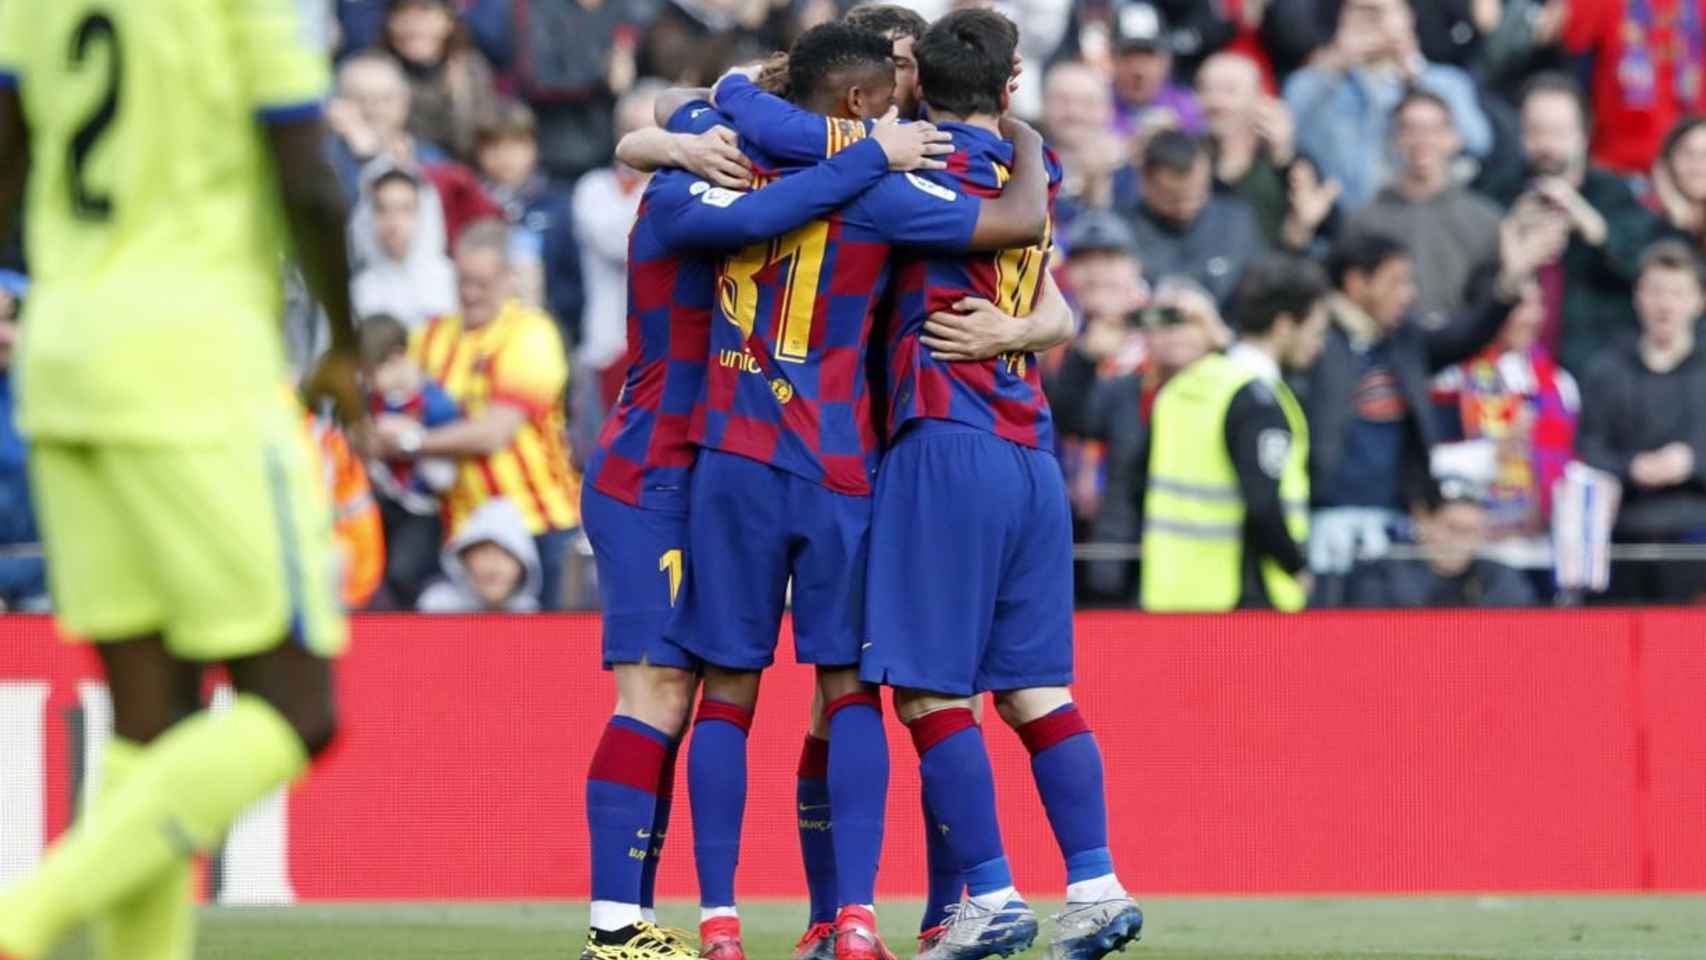 Los jugadores del Barça celebrando un gol / FC Barcelona